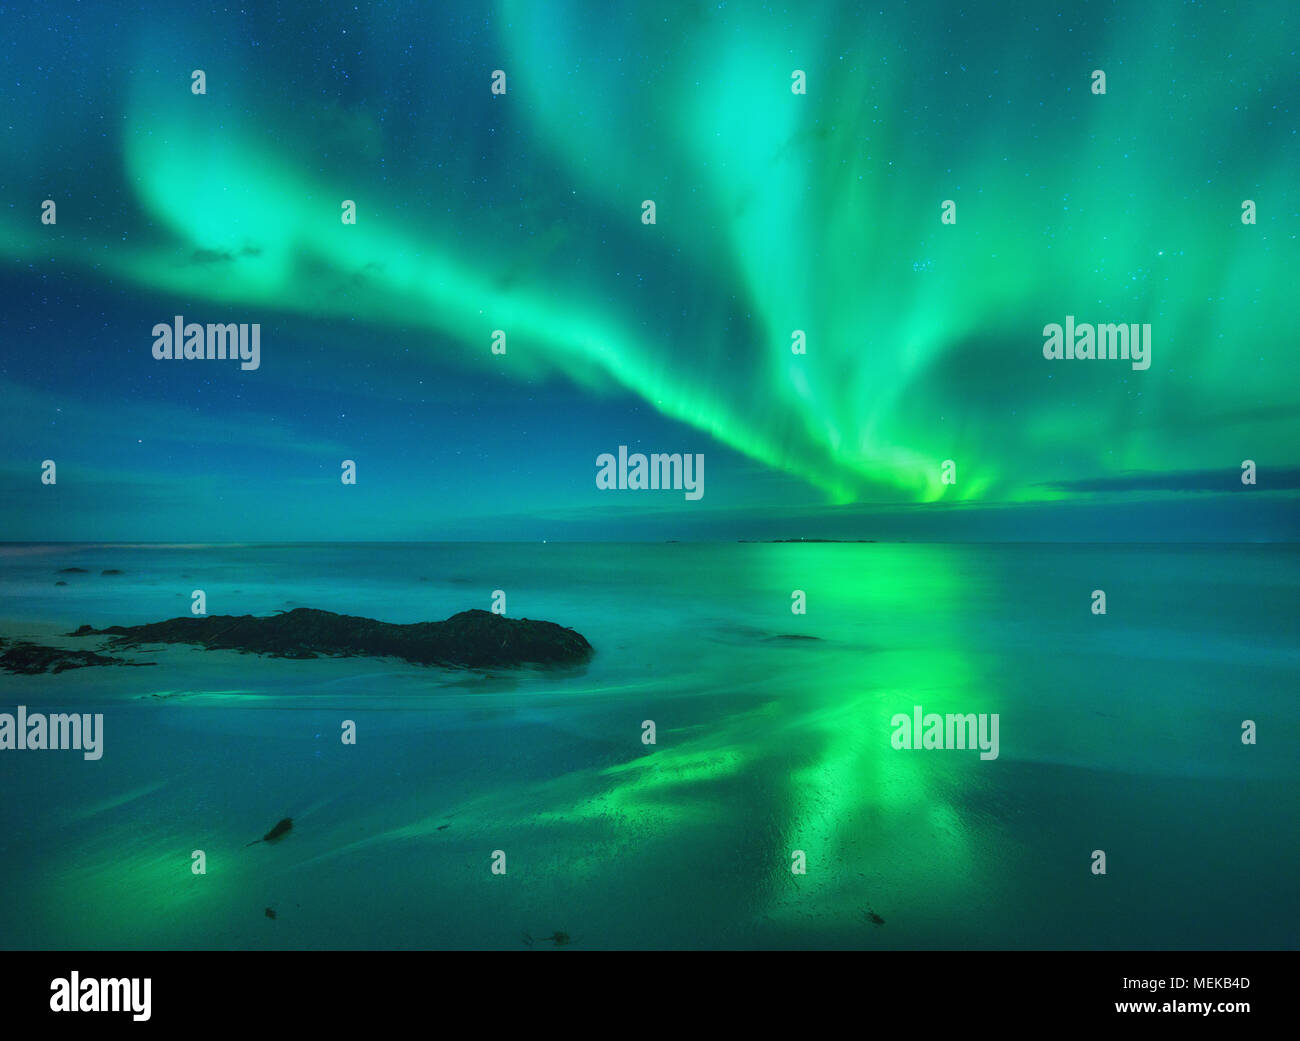 Aurora auf dem Meer. Nordlicht in Lofoten Inseln, Norwegen. Sternenhimmel mit Polarlichter. Nacht Landschaft mit Aurora, Meer mit fliessend Wasser und s Stockfoto